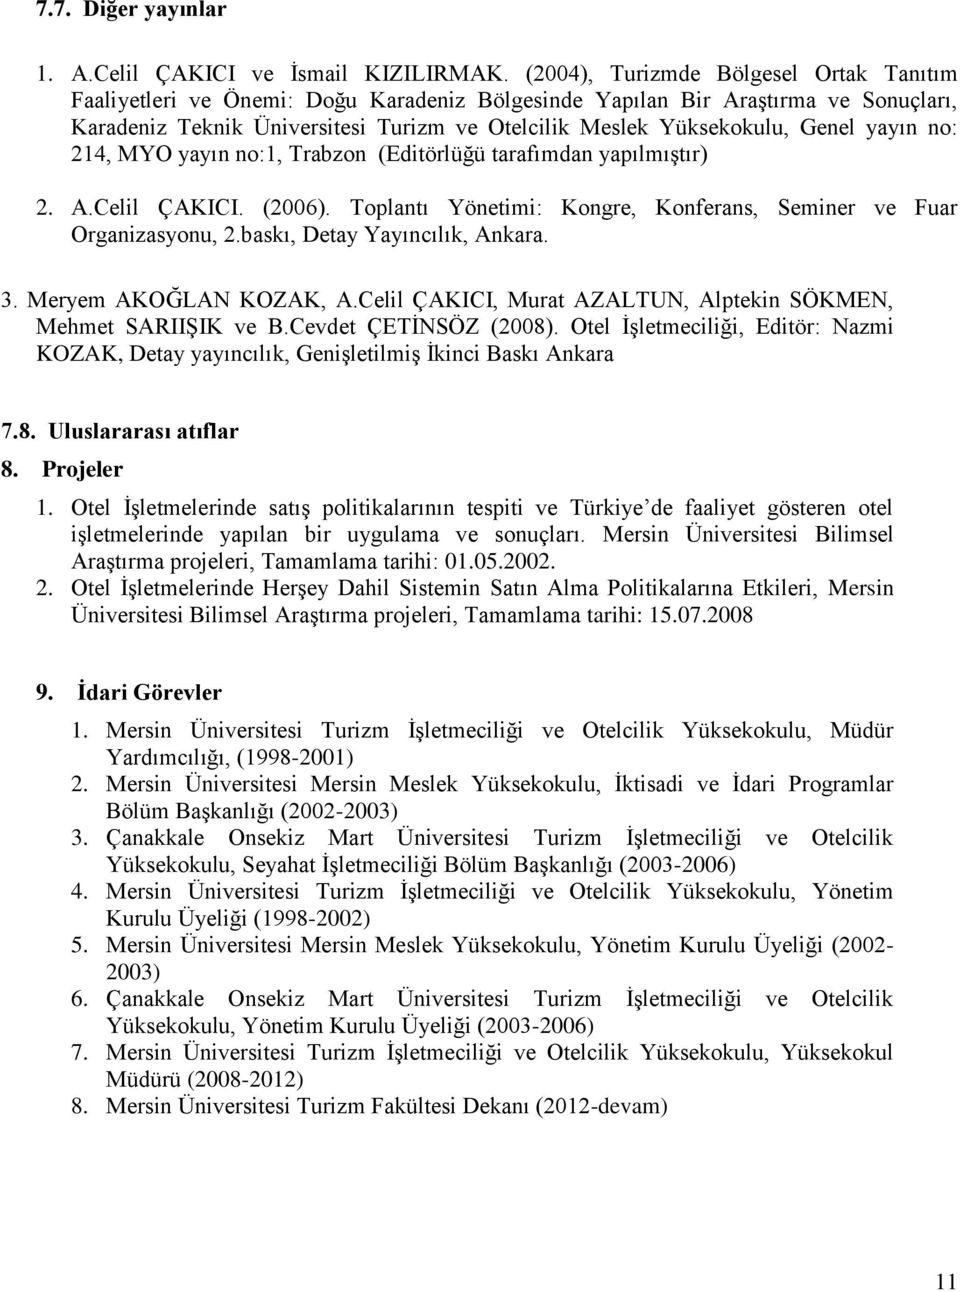 Genel yayın no: 214, MYO yayın no:1, Trabzon (Editörlüğü tarafımdan yapılmıştır) 2. A.Celil ÇAKICI. (2006). Toplantı Yönetimi: Kongre, Konferans, Seminer ve Fuar Organizasyonu, 2.